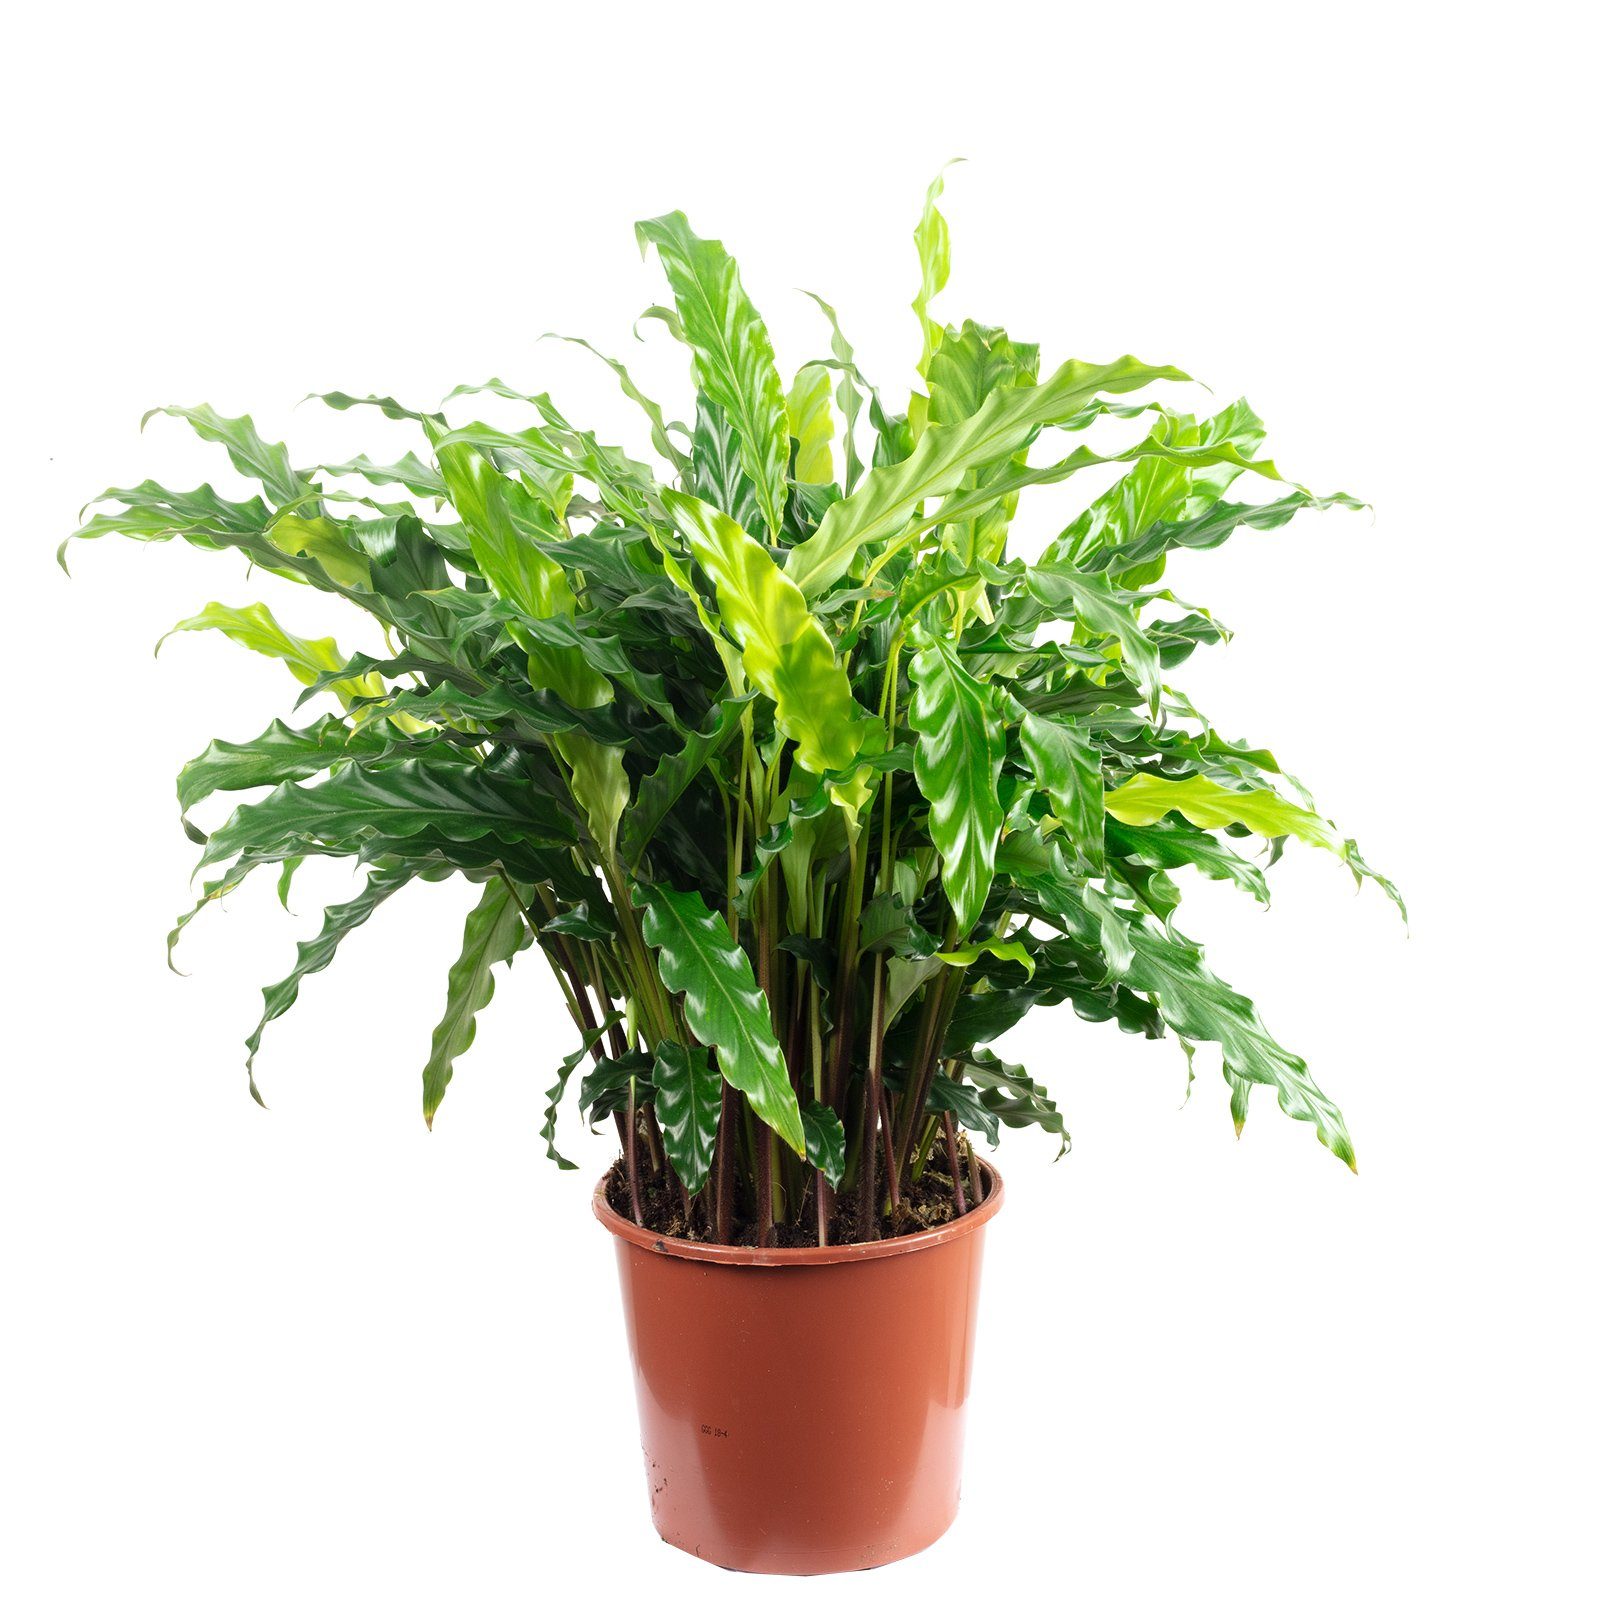 Flowerbox Blumentopf »bepflanzt mit Zimmerpflanze Korbmarante "rufibarba "  - Calathea - Höhe ca. 60 cm, Topf-Ø 17 cm« online kaufen | OTTO